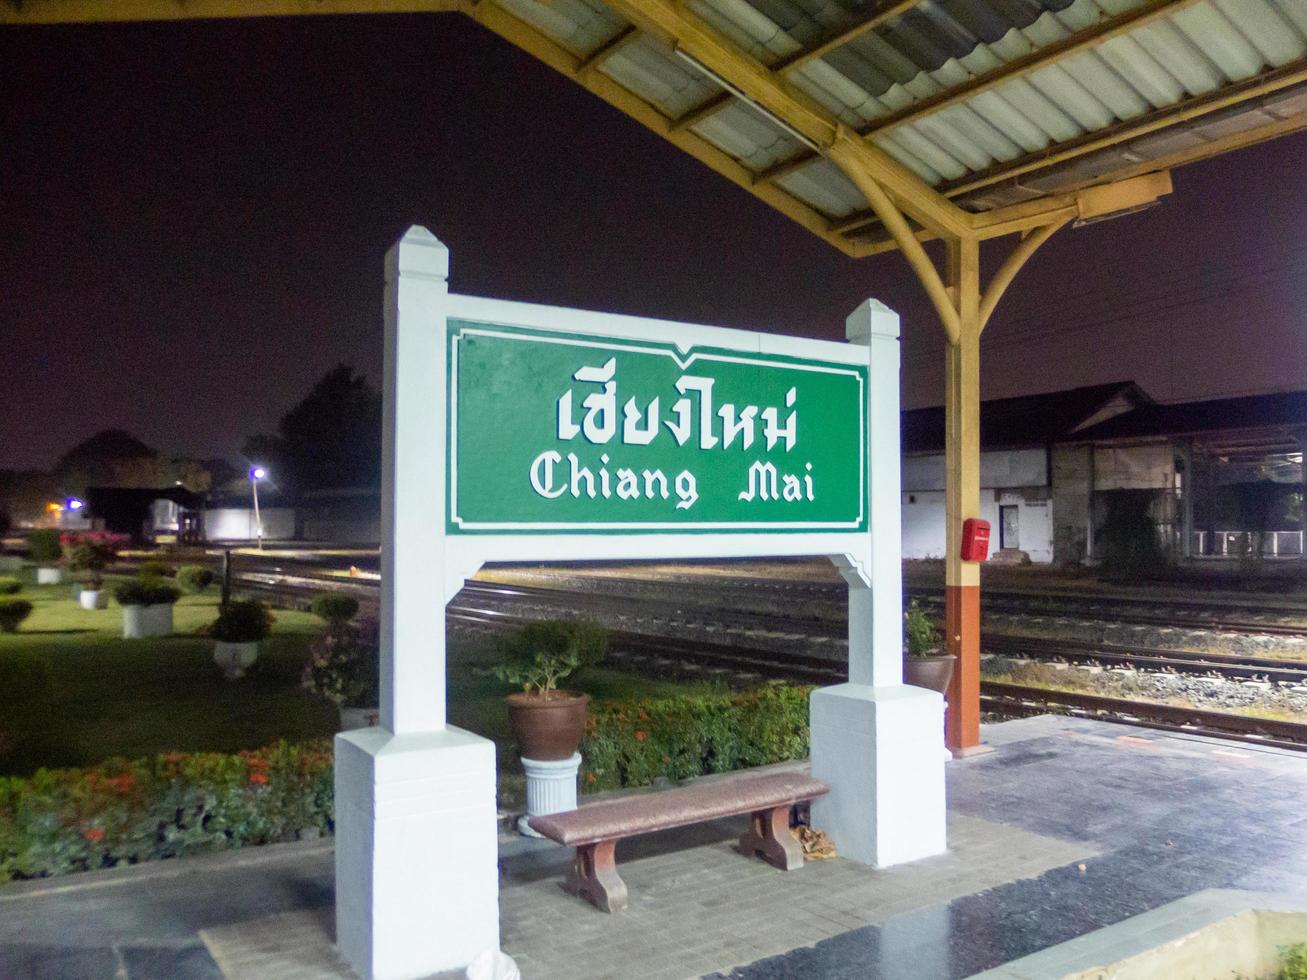 gare de chiang mai chiang mai thailande10 janvier 2020est une gare de 1ère classe et la gare principale de la province de chiang mai. cette station se trouve du côté est de la rivière ping. photo